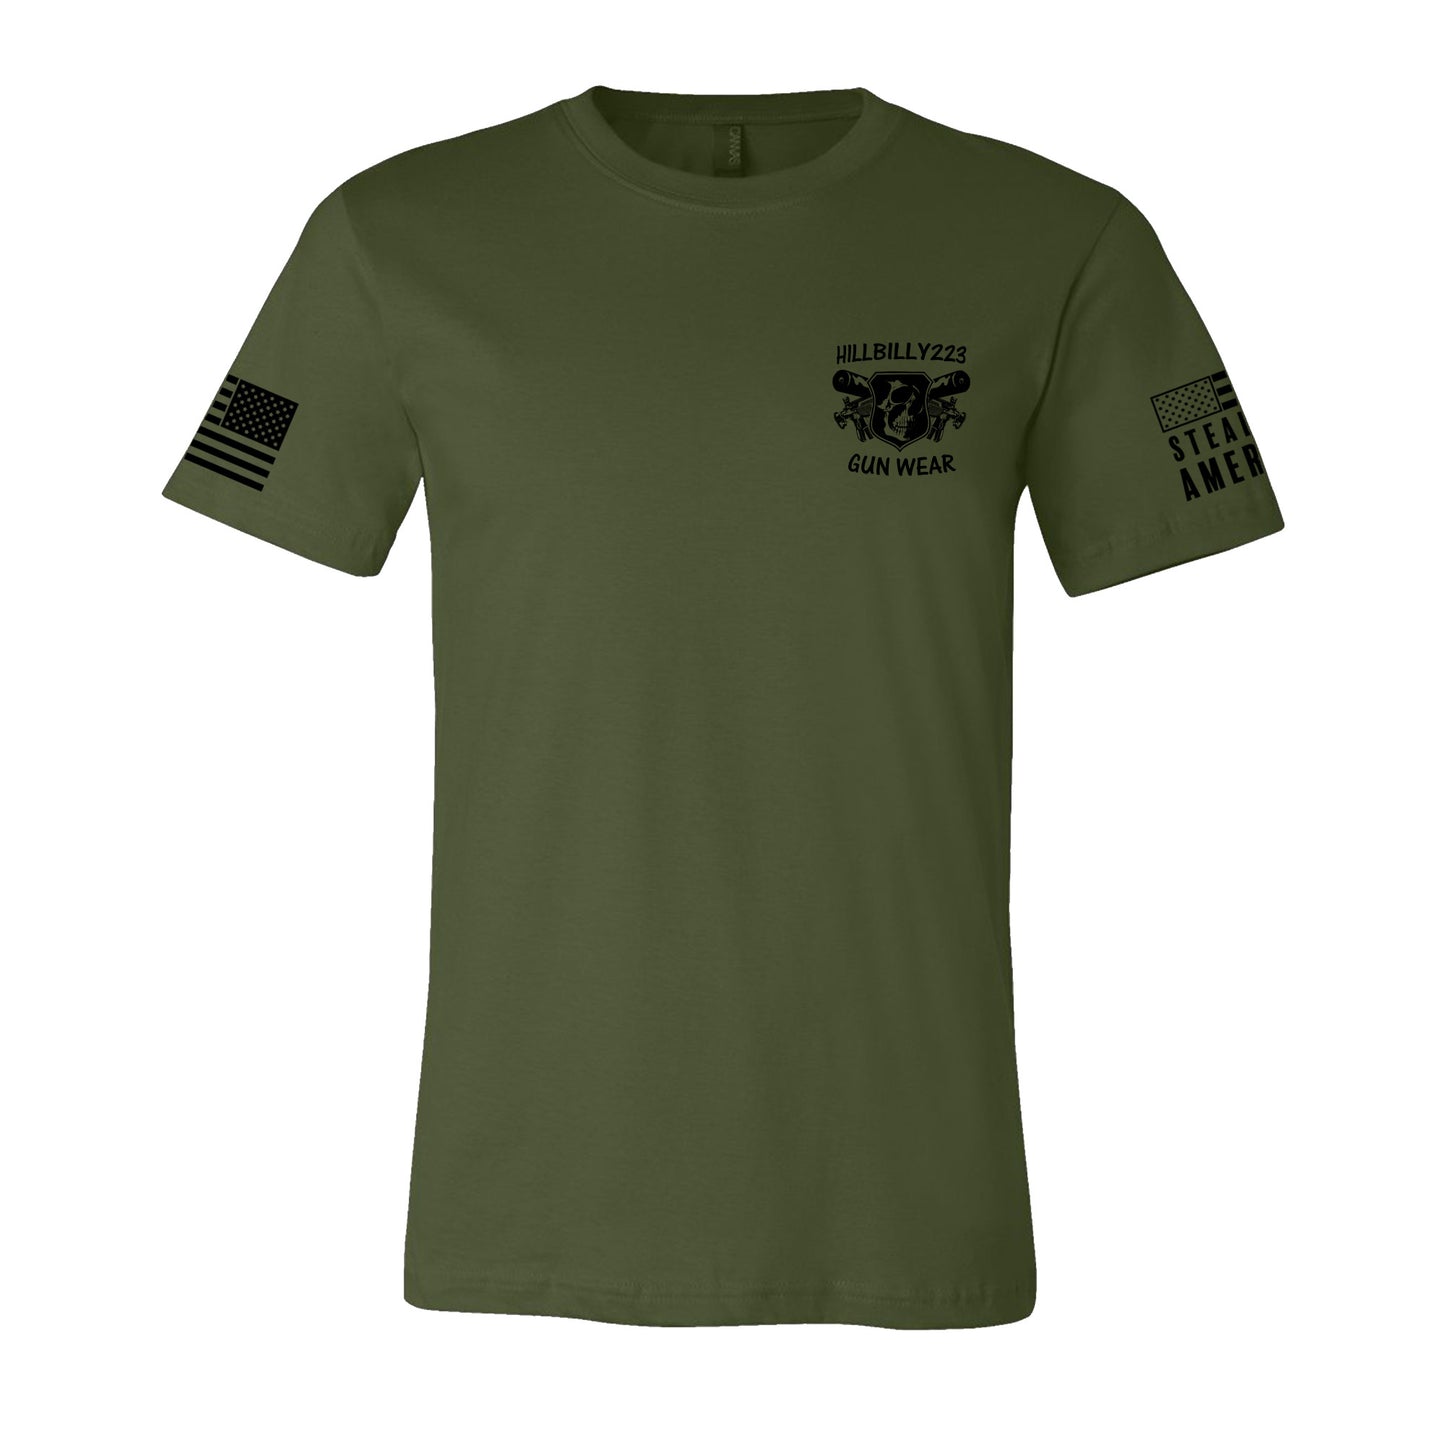 Hillbilly223 Gun Wear T-Shirt